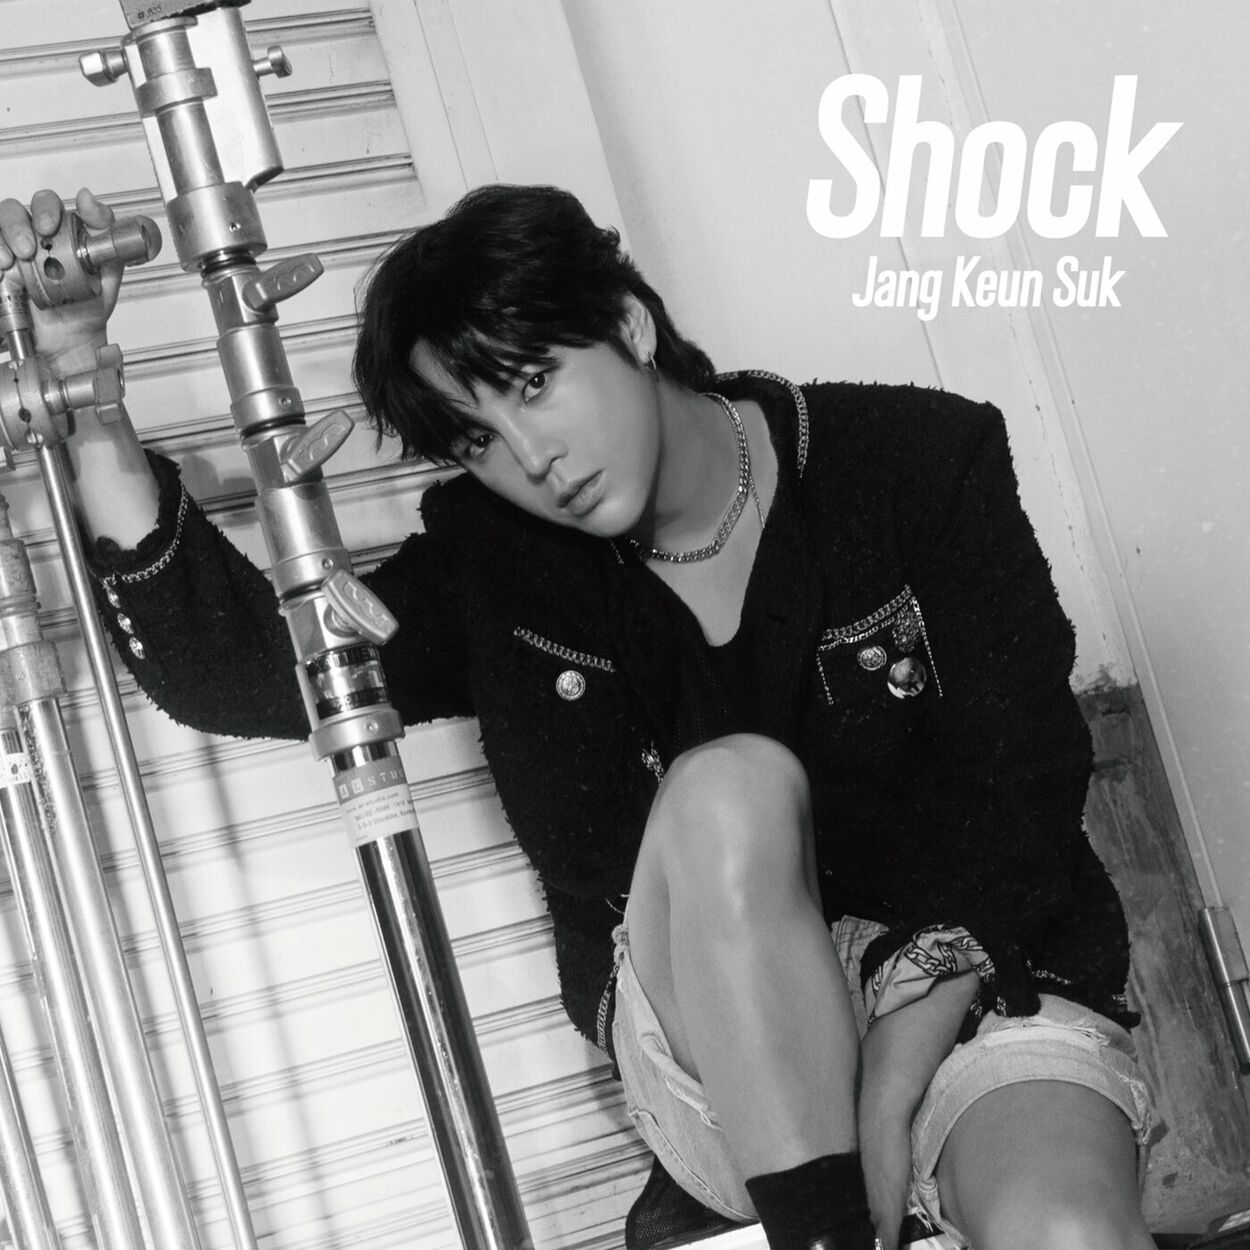 Jang Keun Suk – Shock – Single